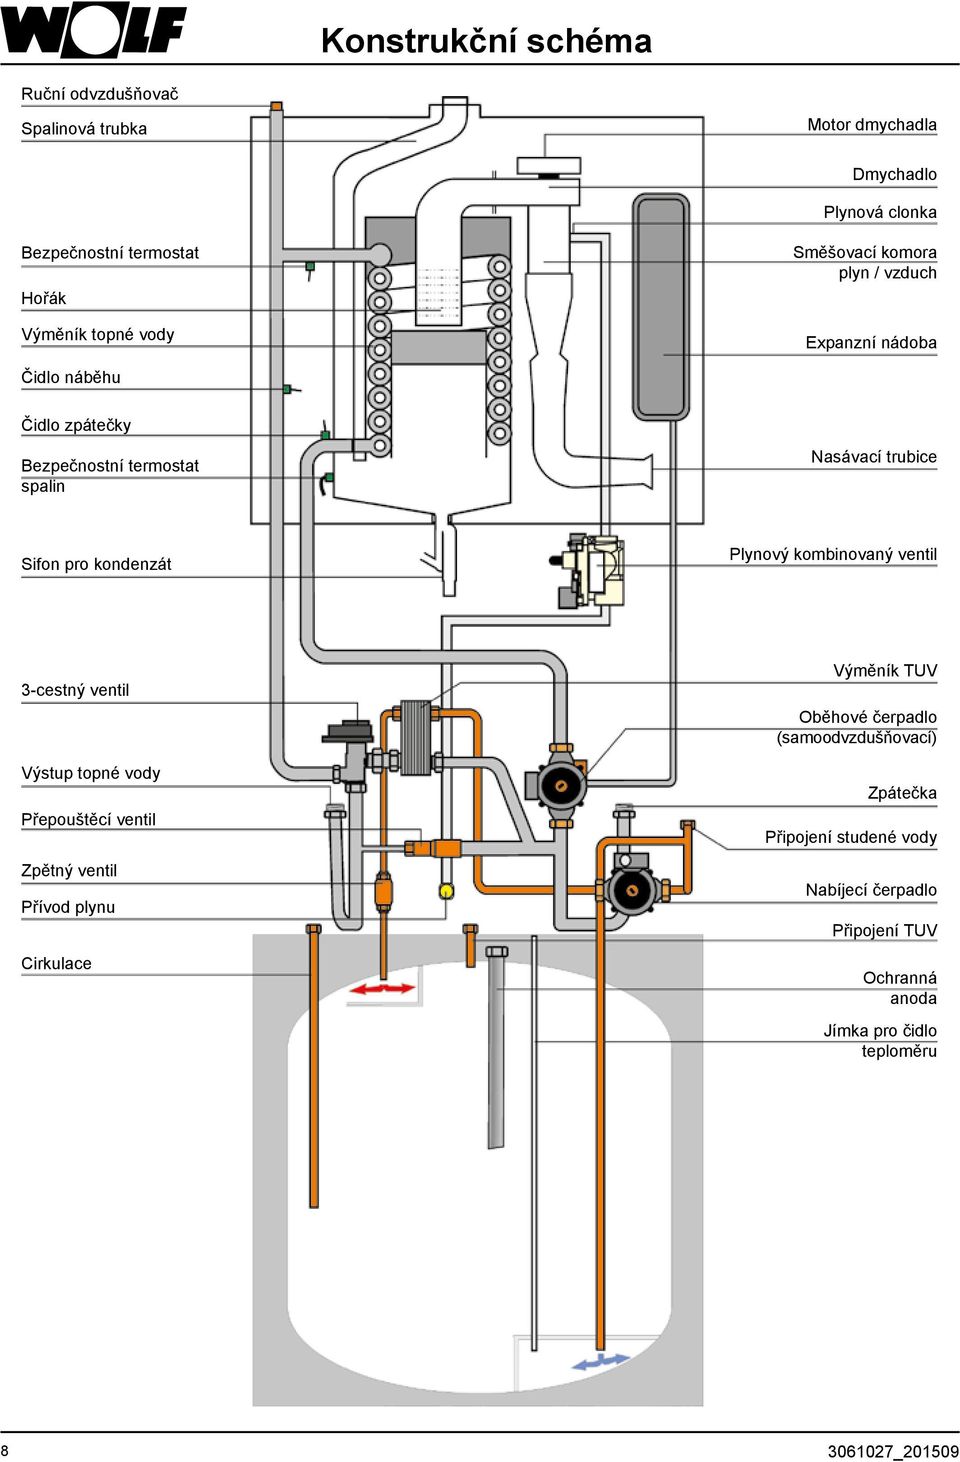 Plynový kombinovaný ventil 3-cestný ventil Výstup topné vody Přepouštěcí ventil Zpětný ventil Přívod plynu Cirkulace Výměník TUV Oběhové